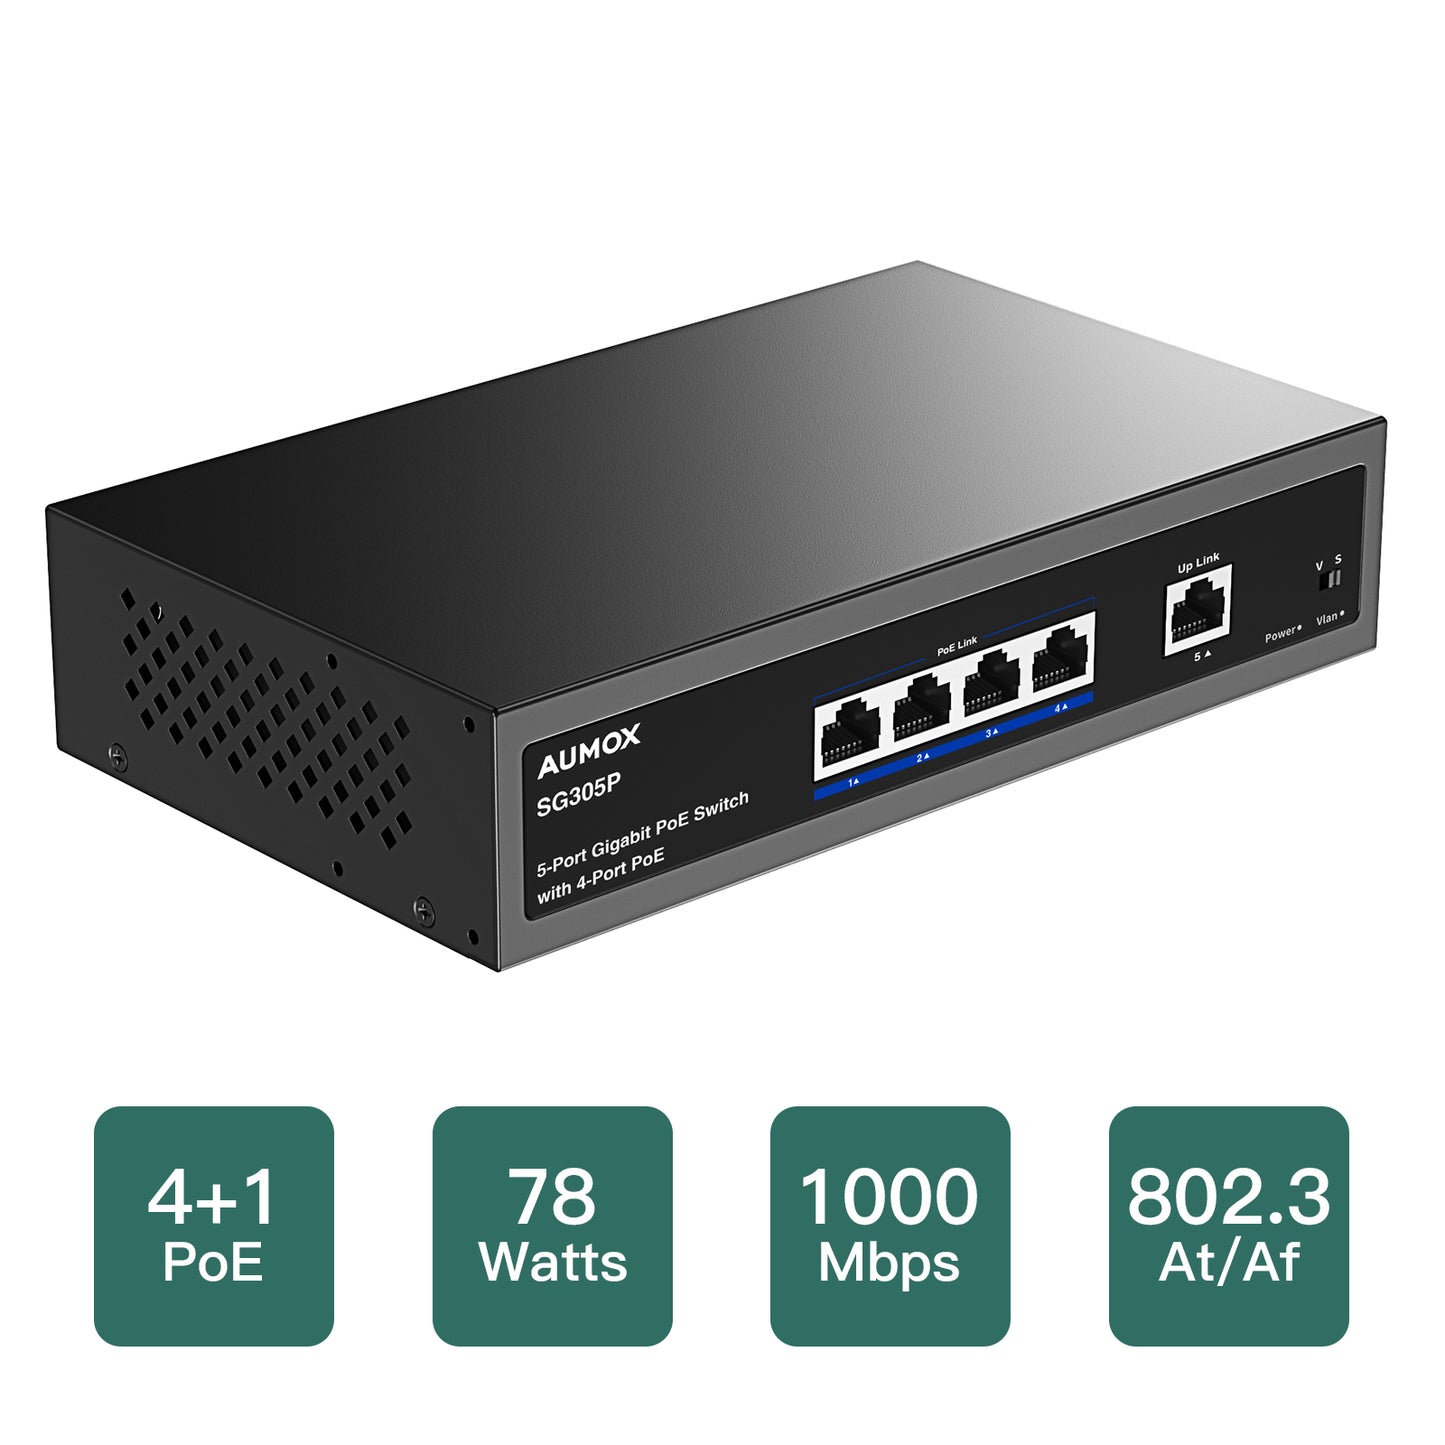 AUMOX 5 Port Gigabit Switch with 4 Port PoE 78W (SG305P)